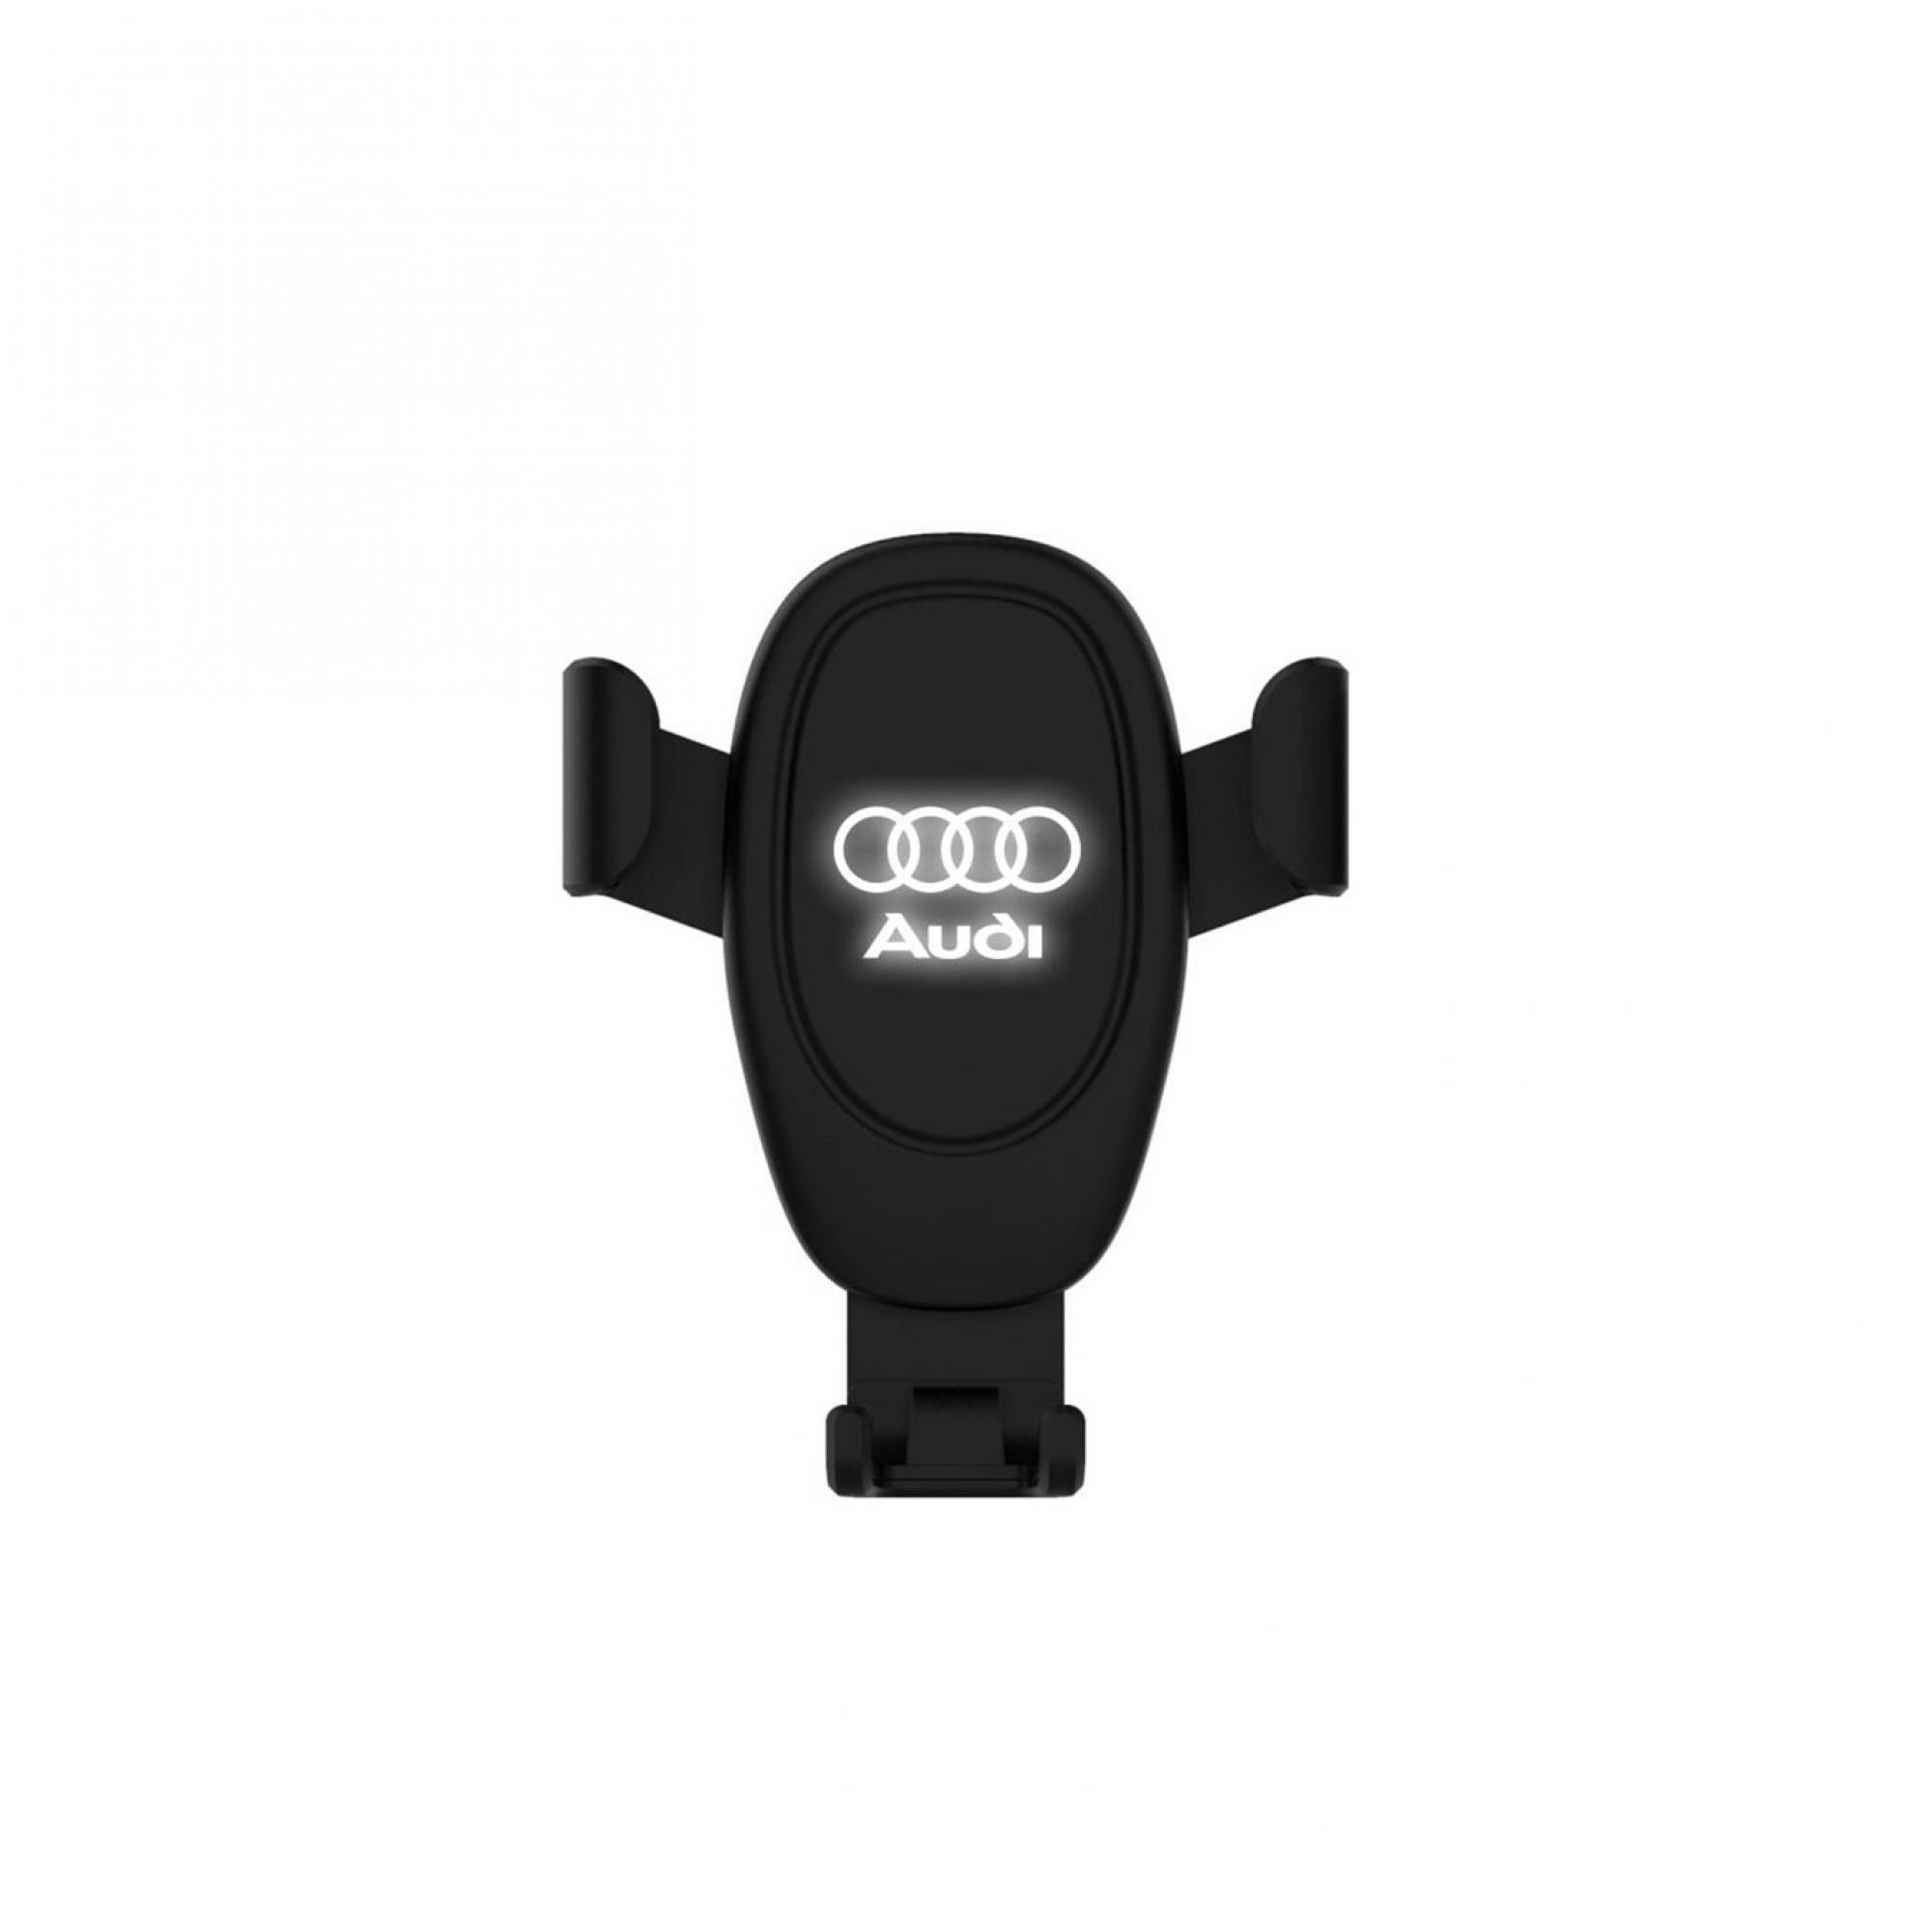 Автомобильное беспроводное (10W) зарядное устройство "Clamp SOFTTOUCH" с подсветкой логотипа, покрытие soft touch, цвет черный, фото 1